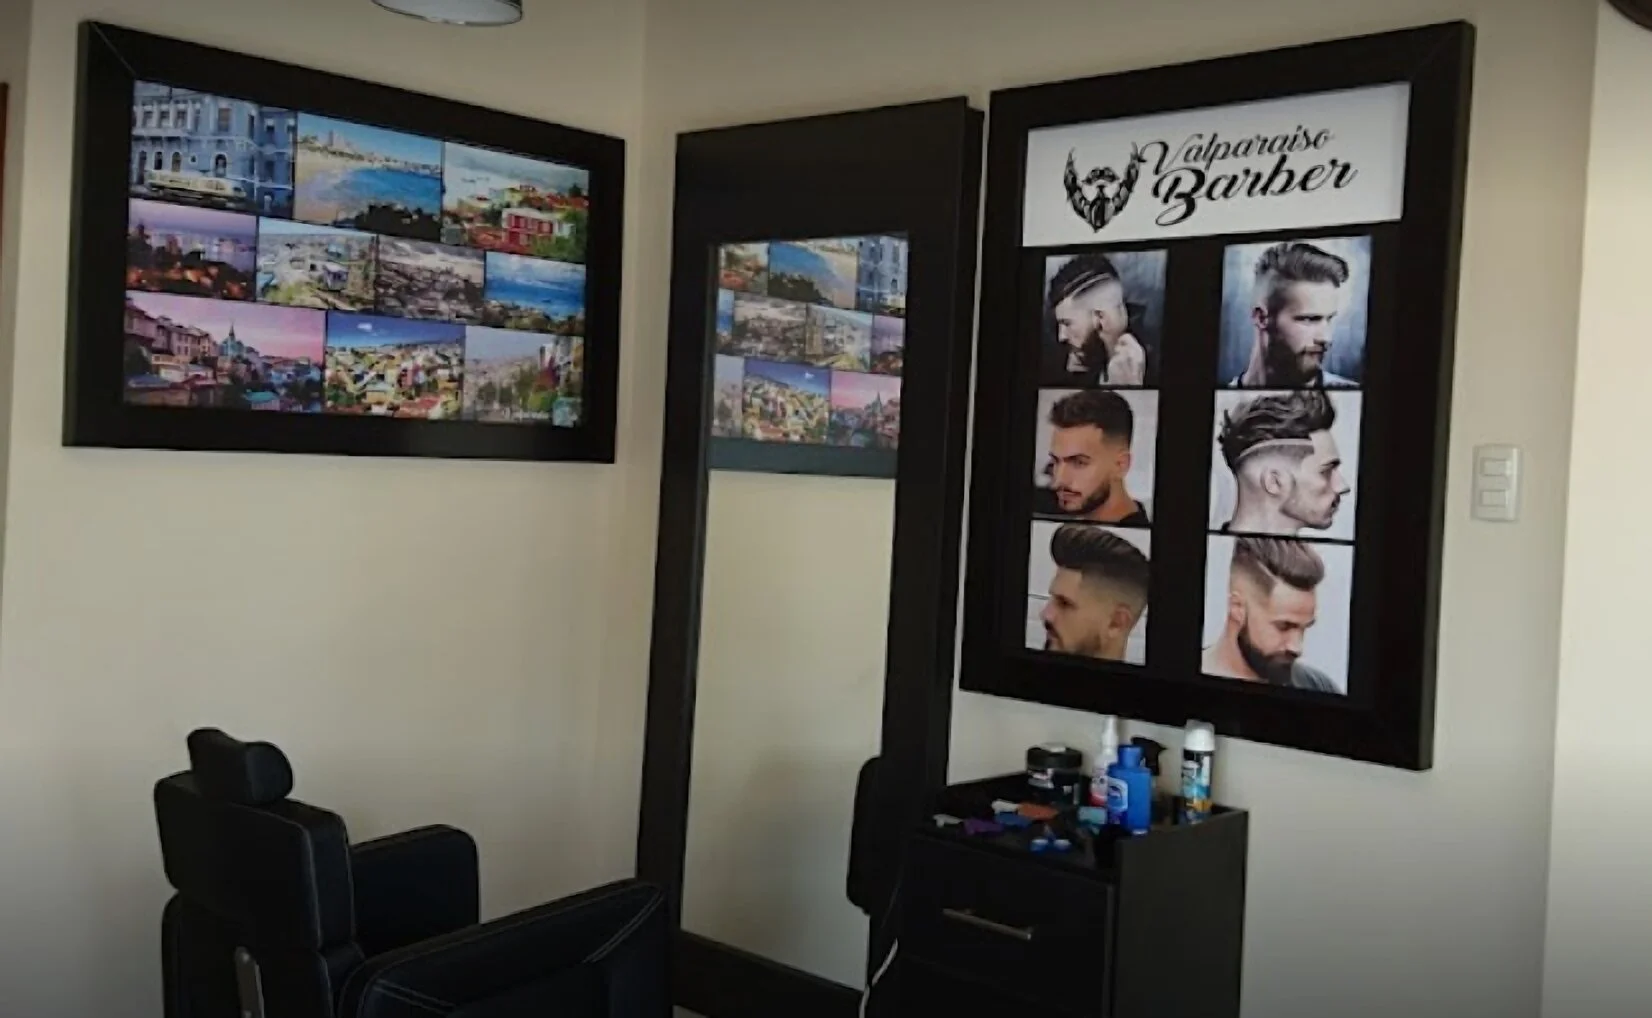 Barbería-valparaiso-barber-11654